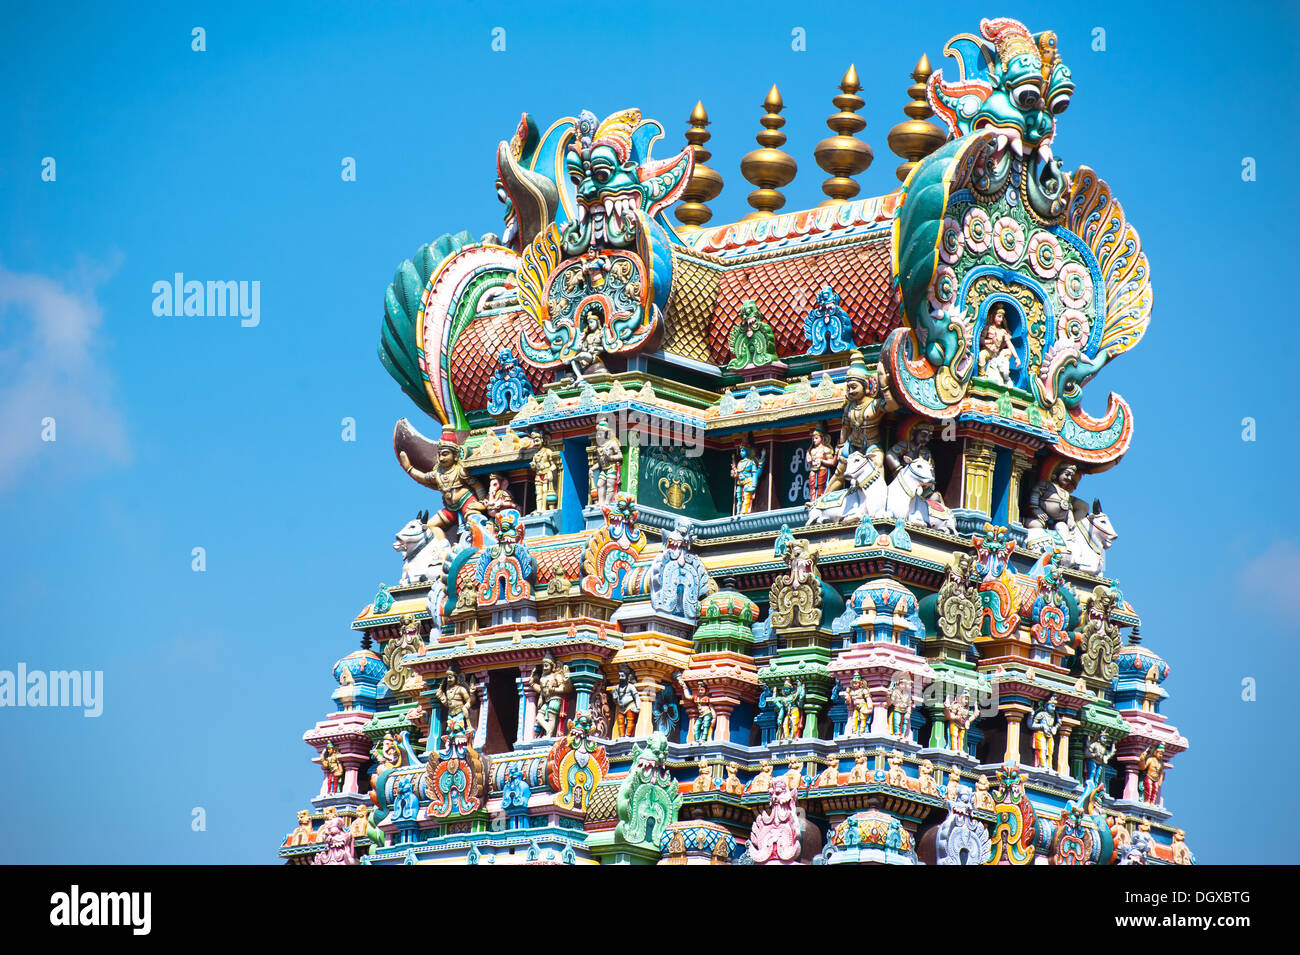 Großer Süden indische Architektur, Meenakshi-Tempel in Madurai. Süd-Indien, Tamil Nadu, Madurai Stockfoto